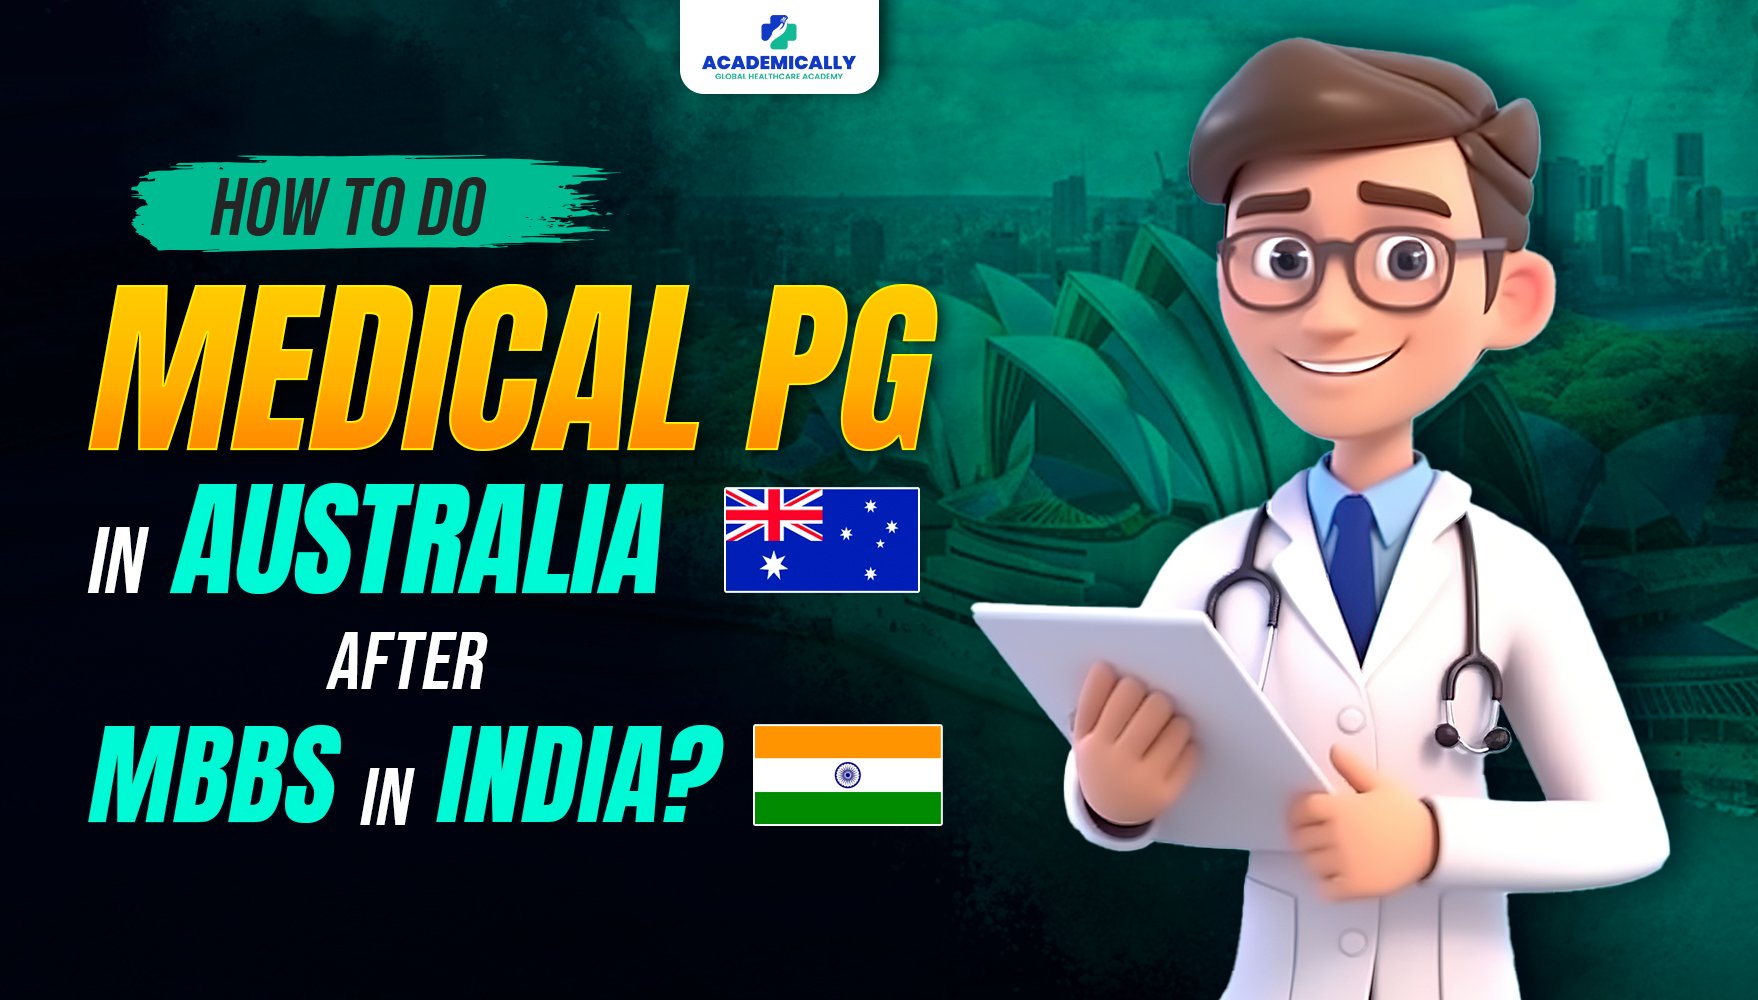 Pursuing Medical PG in Australia